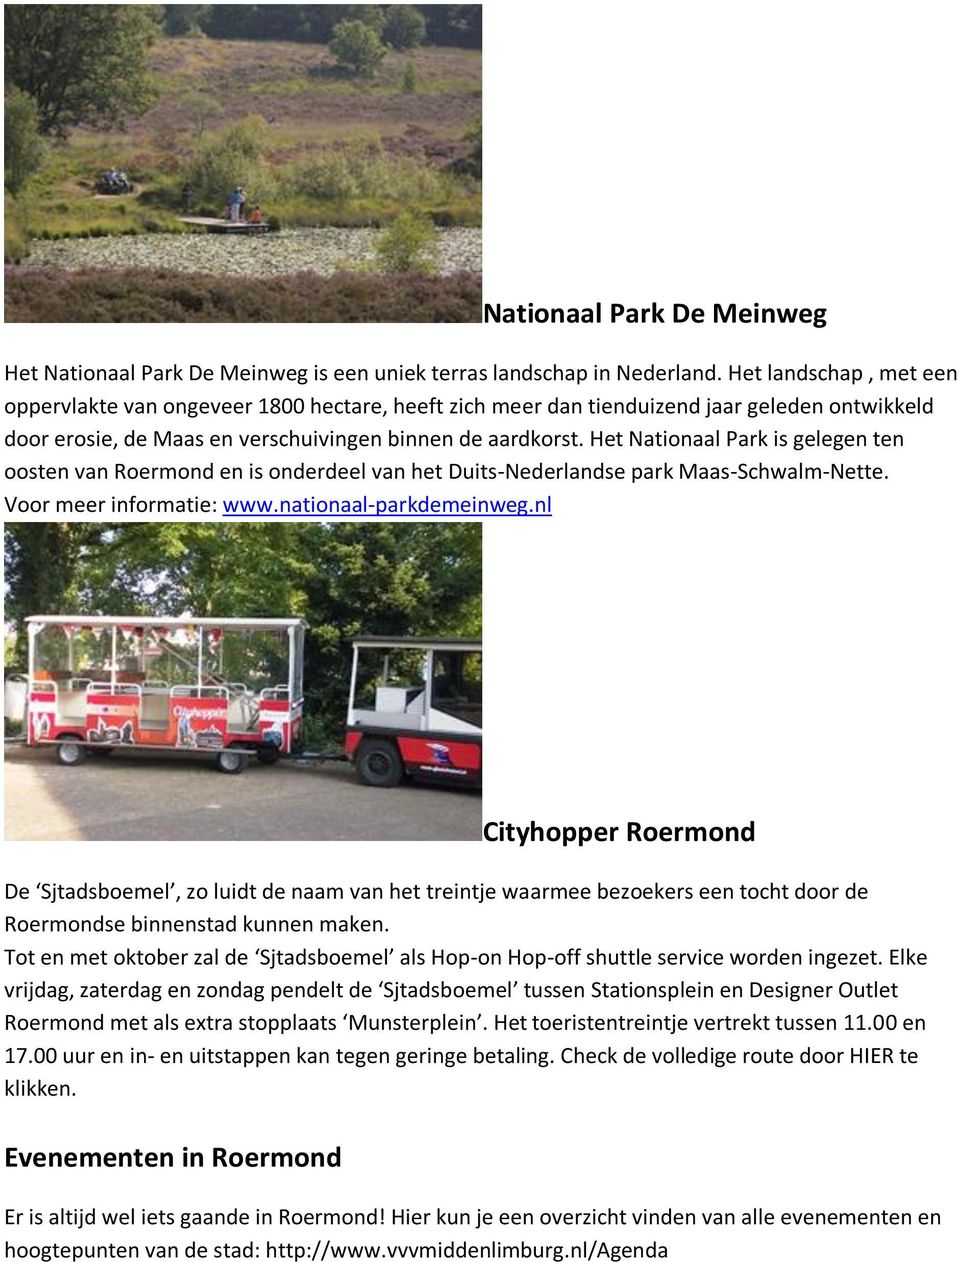 Het Nationaal Park is gelegen ten oosten van Roermond en is onderdeel van het Duits-Nederlandse park Maas-Schwalm-Nette. Voor meer informatie: www.nationaal-parkdemeinweg.